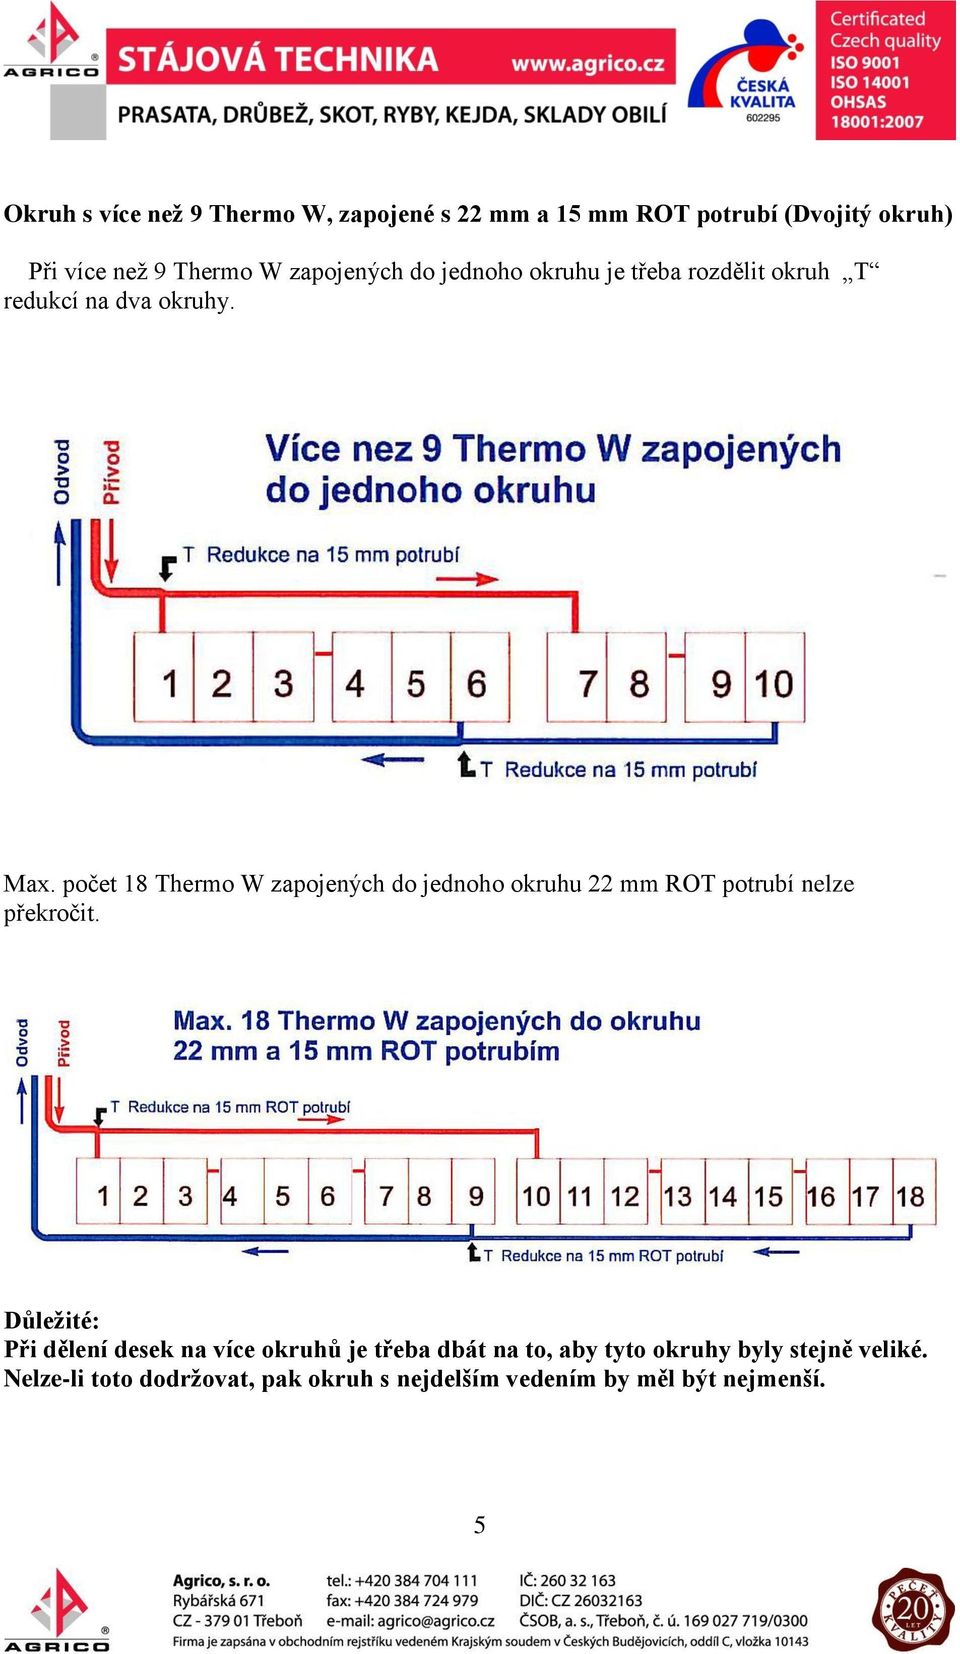 počet 18 Thermo W zapojených do jednoho okruhu 22 mm ROT potrubí nelze překročit.